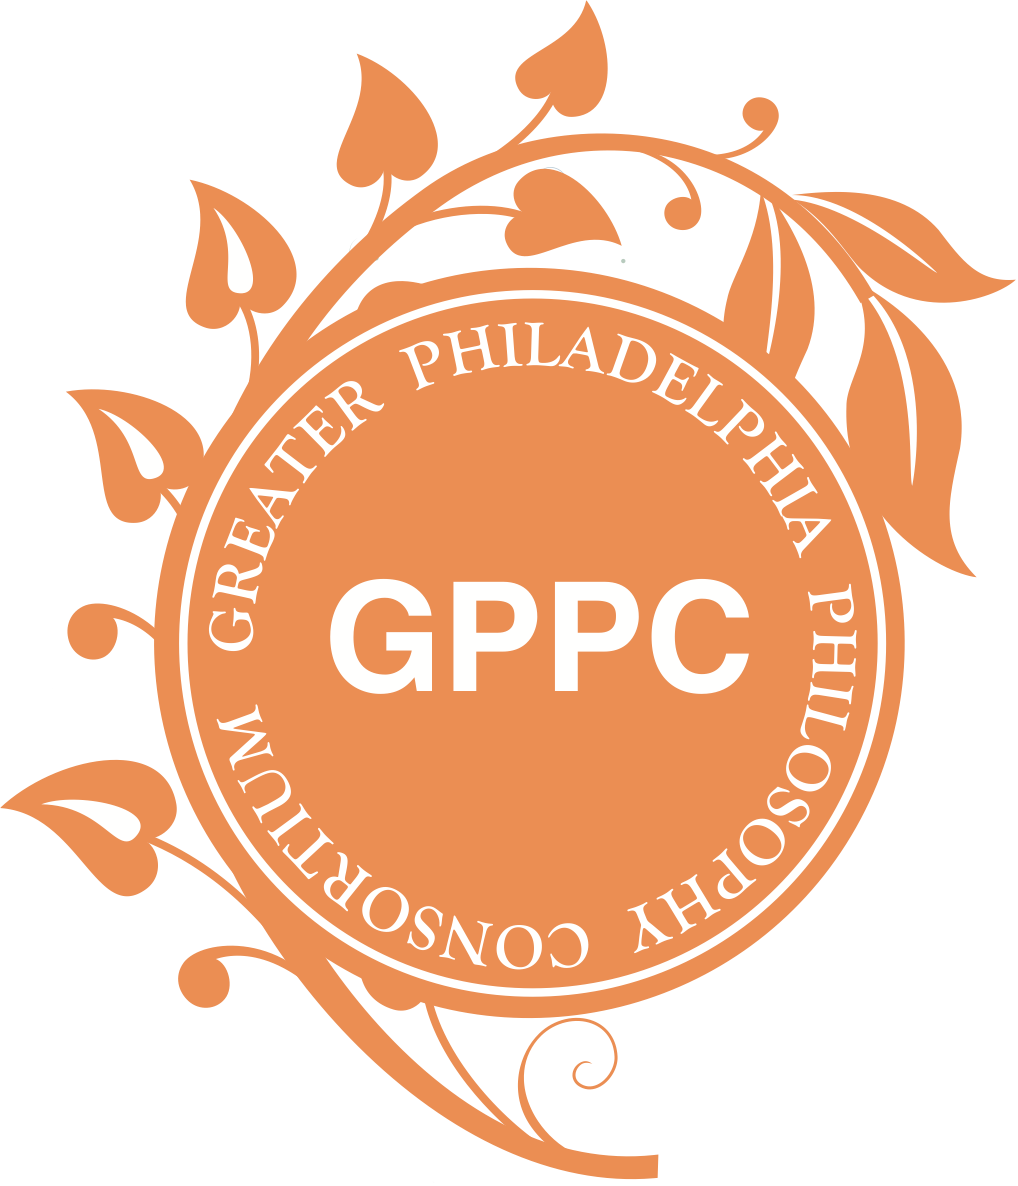 The GPPC